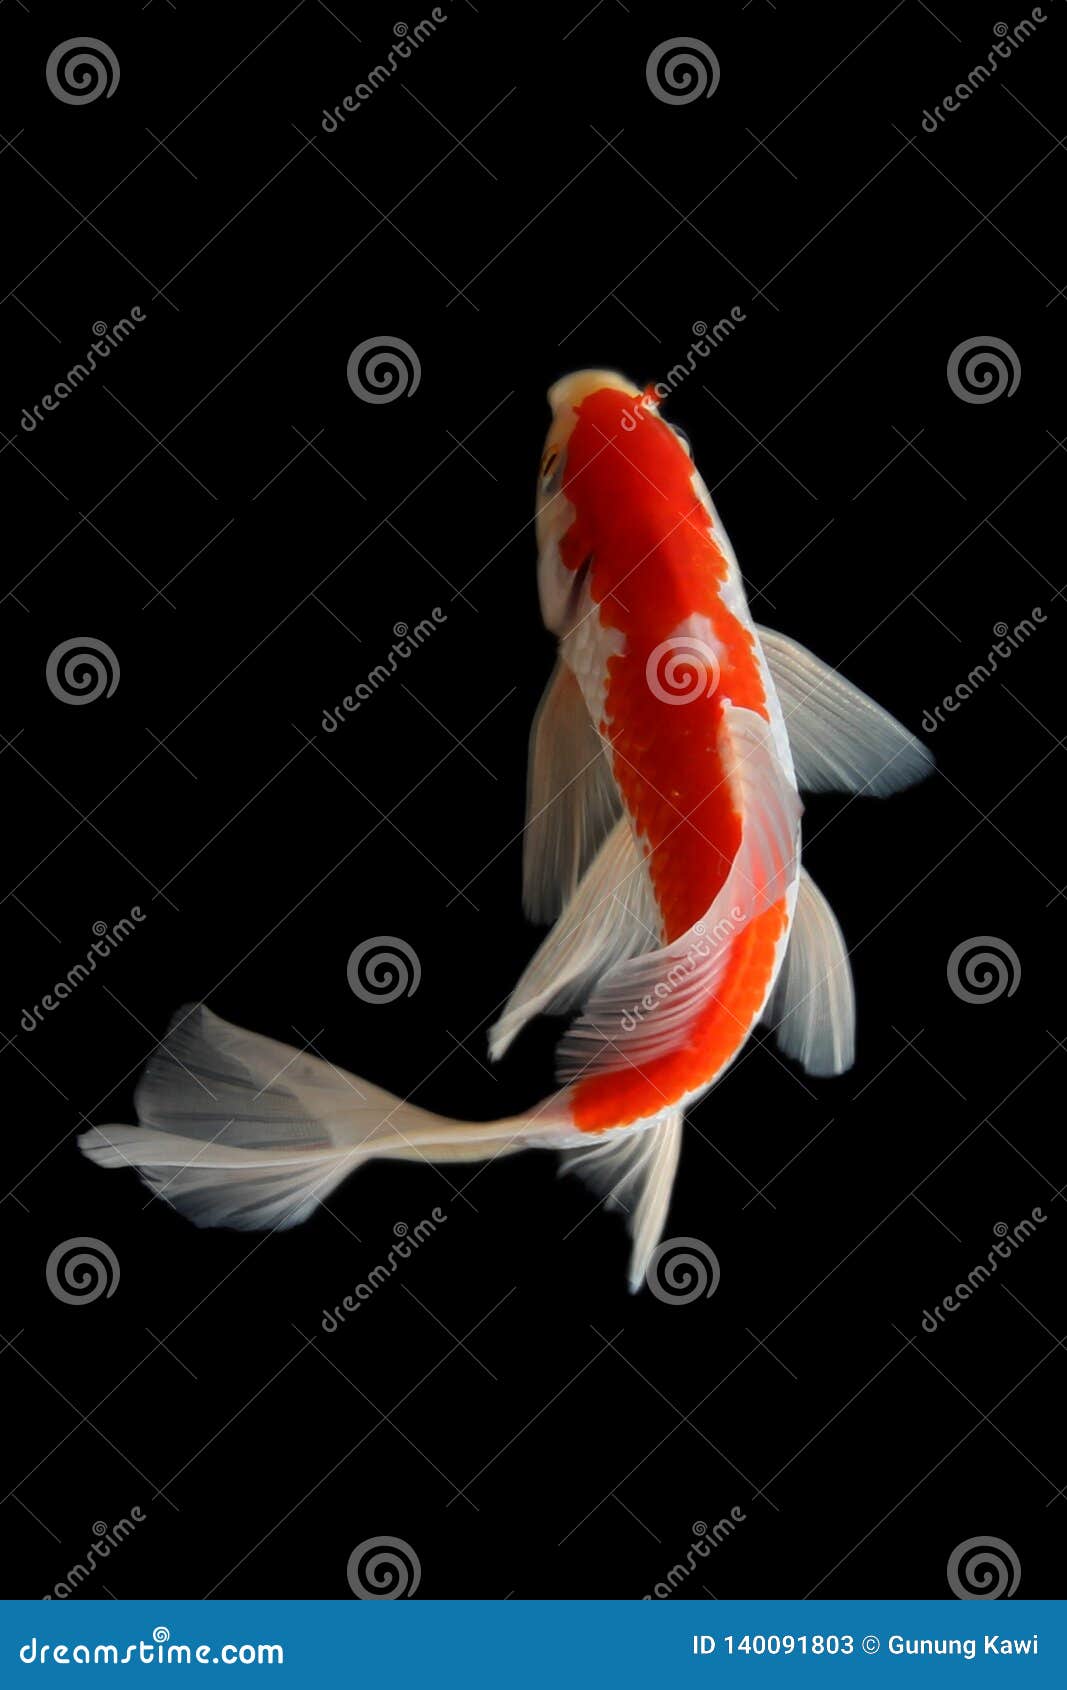 Koi fish Black background stock image. Image of fish